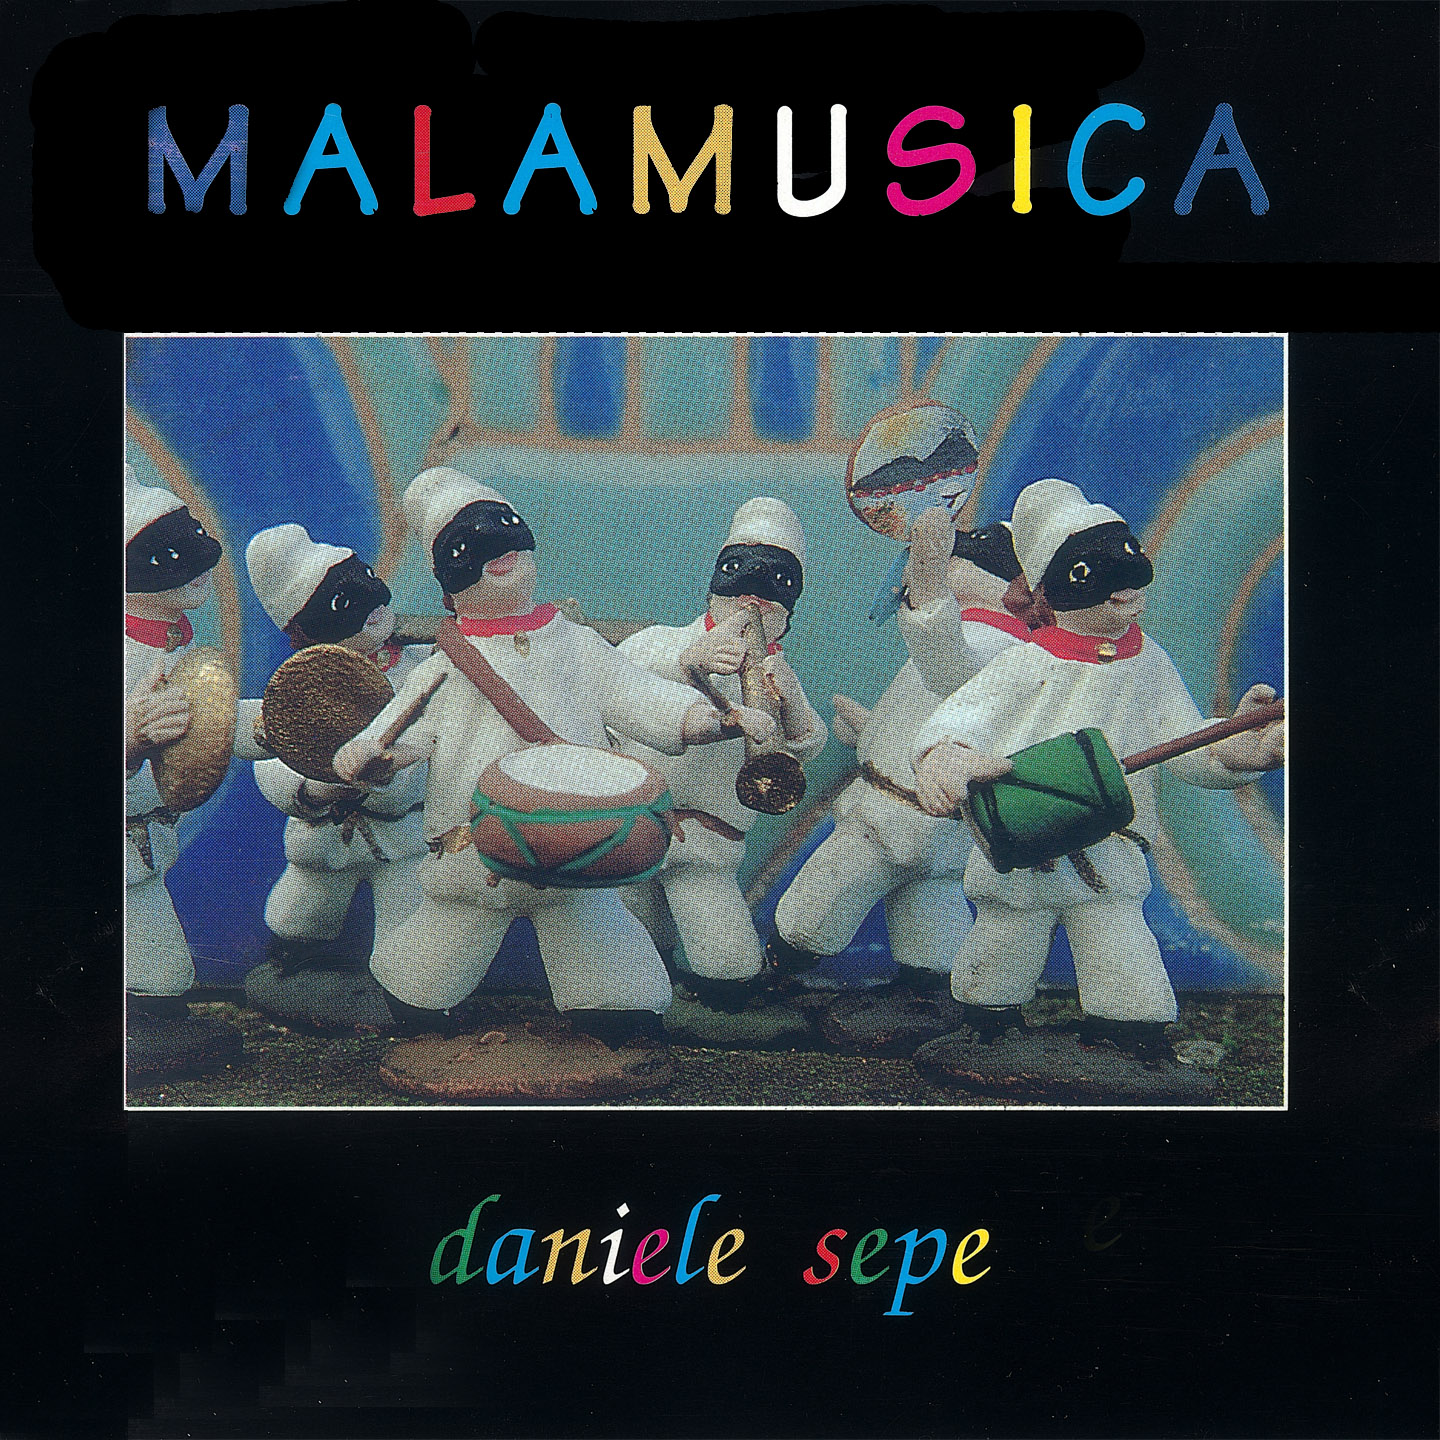 Malamusica – Polosud records